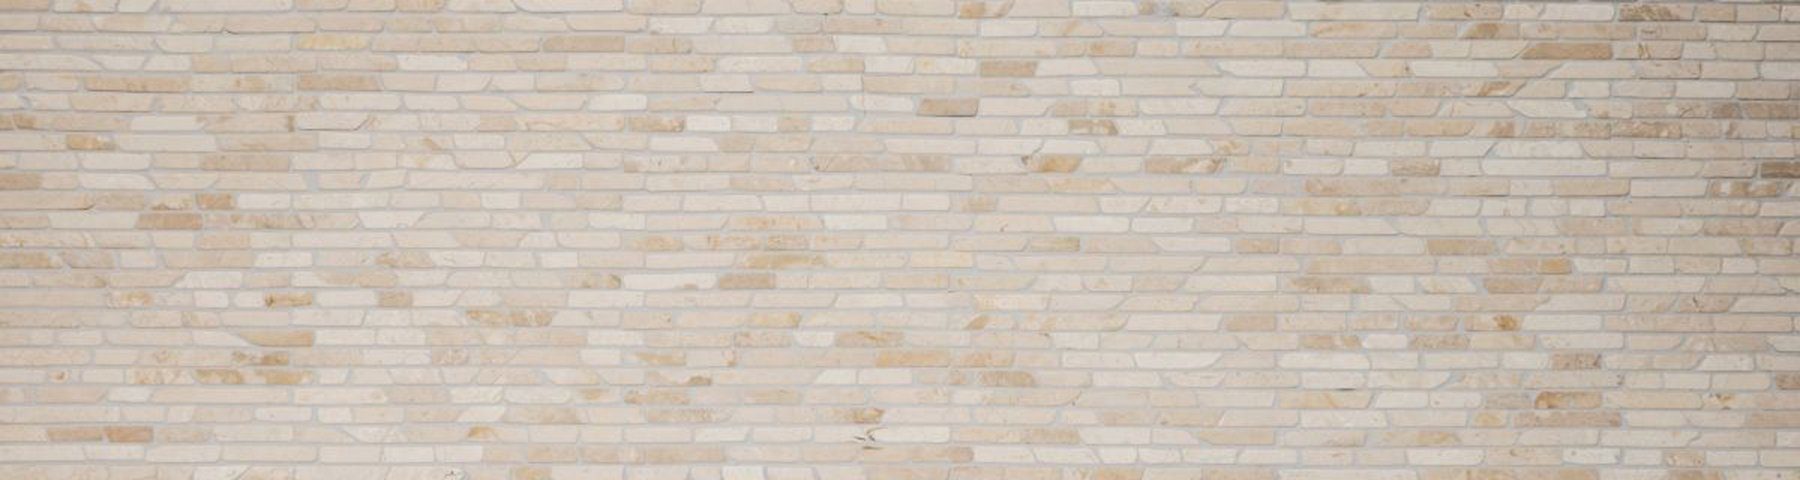 Mosani Bodenfliese Verbund Marmor Naturstein Fliesenspiegel hellbeige Brick Mosaik